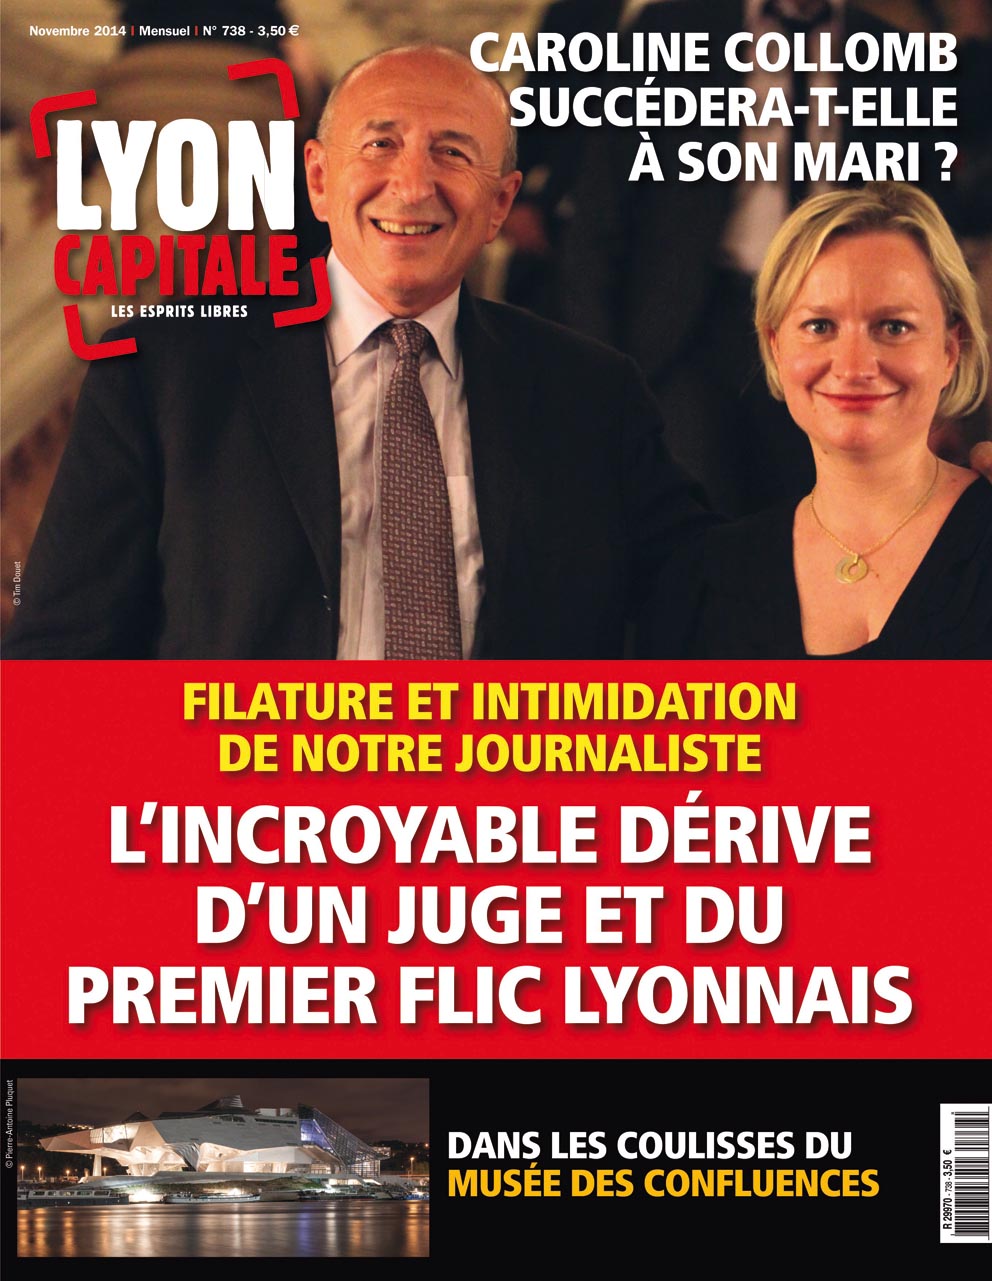 Lyon Capitale n°738, novembre 2014